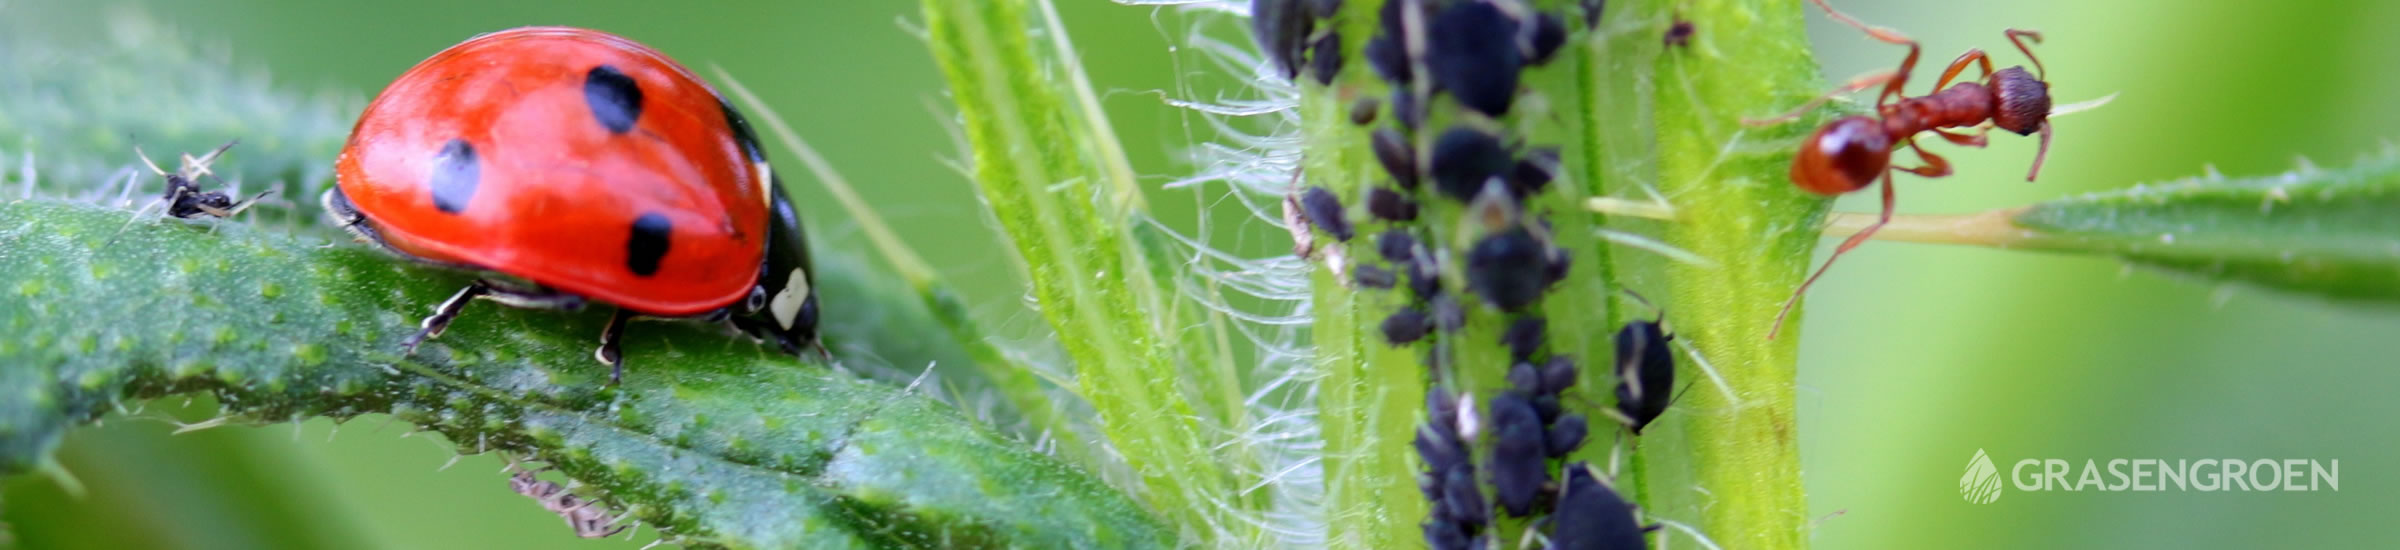 Tuinplagenziekten • Gras en Groen Winkel